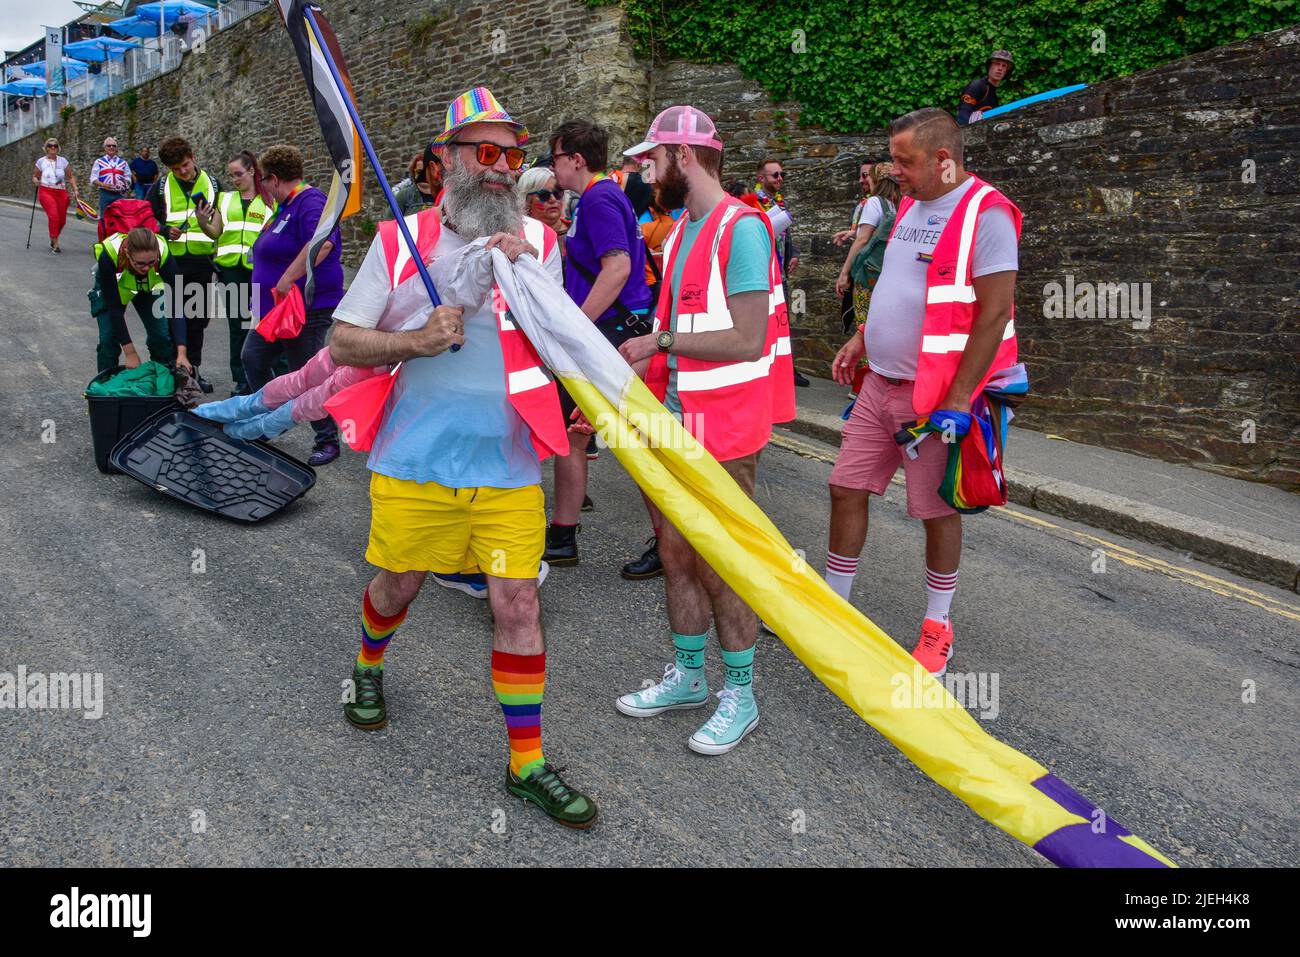 Le drapeau de la fierté gaie, coloré et vibrant, est démené au défilé de la fierté des prides de Cornwall dans le centre-ville de Newquay, au Royaume-Uni. Banque D'Images